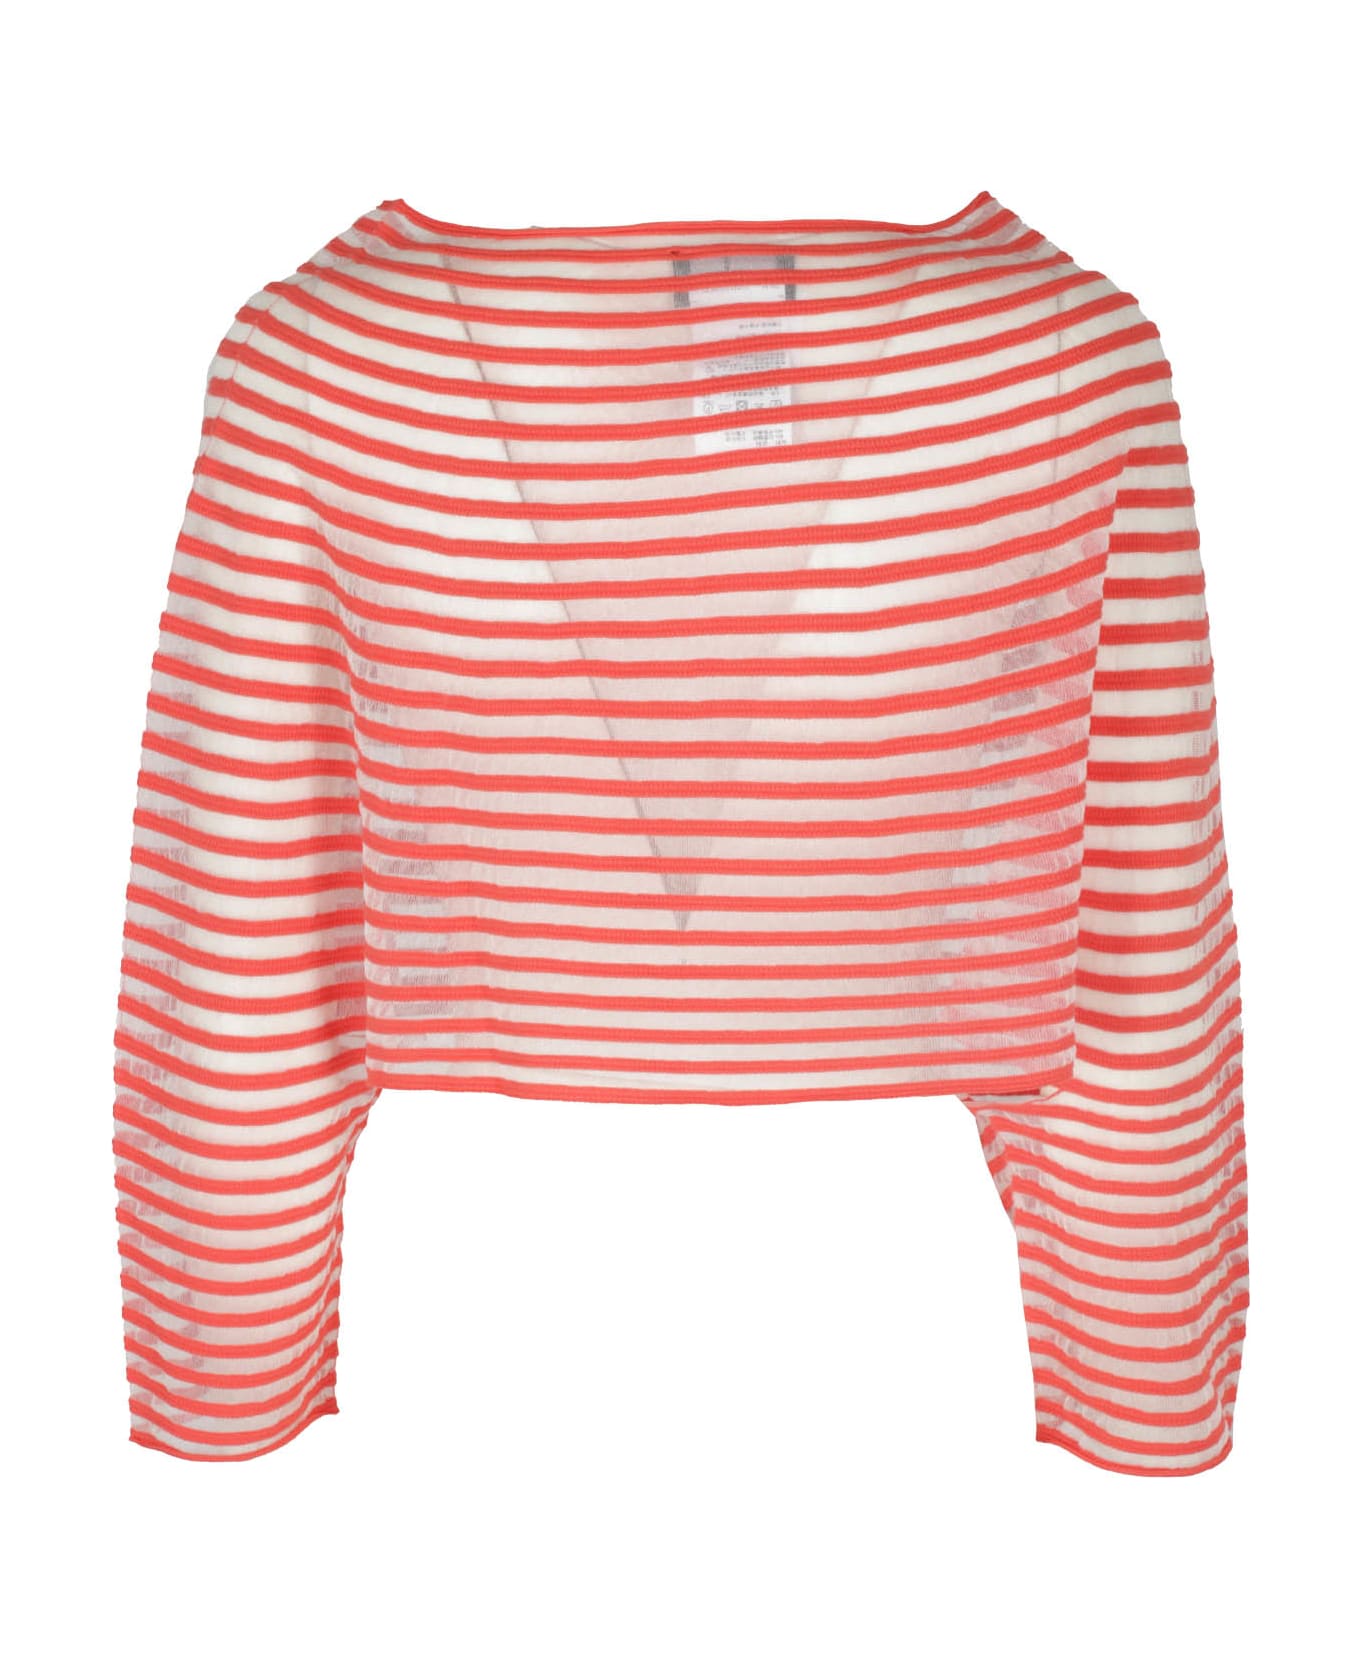 Emporio Armani Striped Knit Jumper - Red